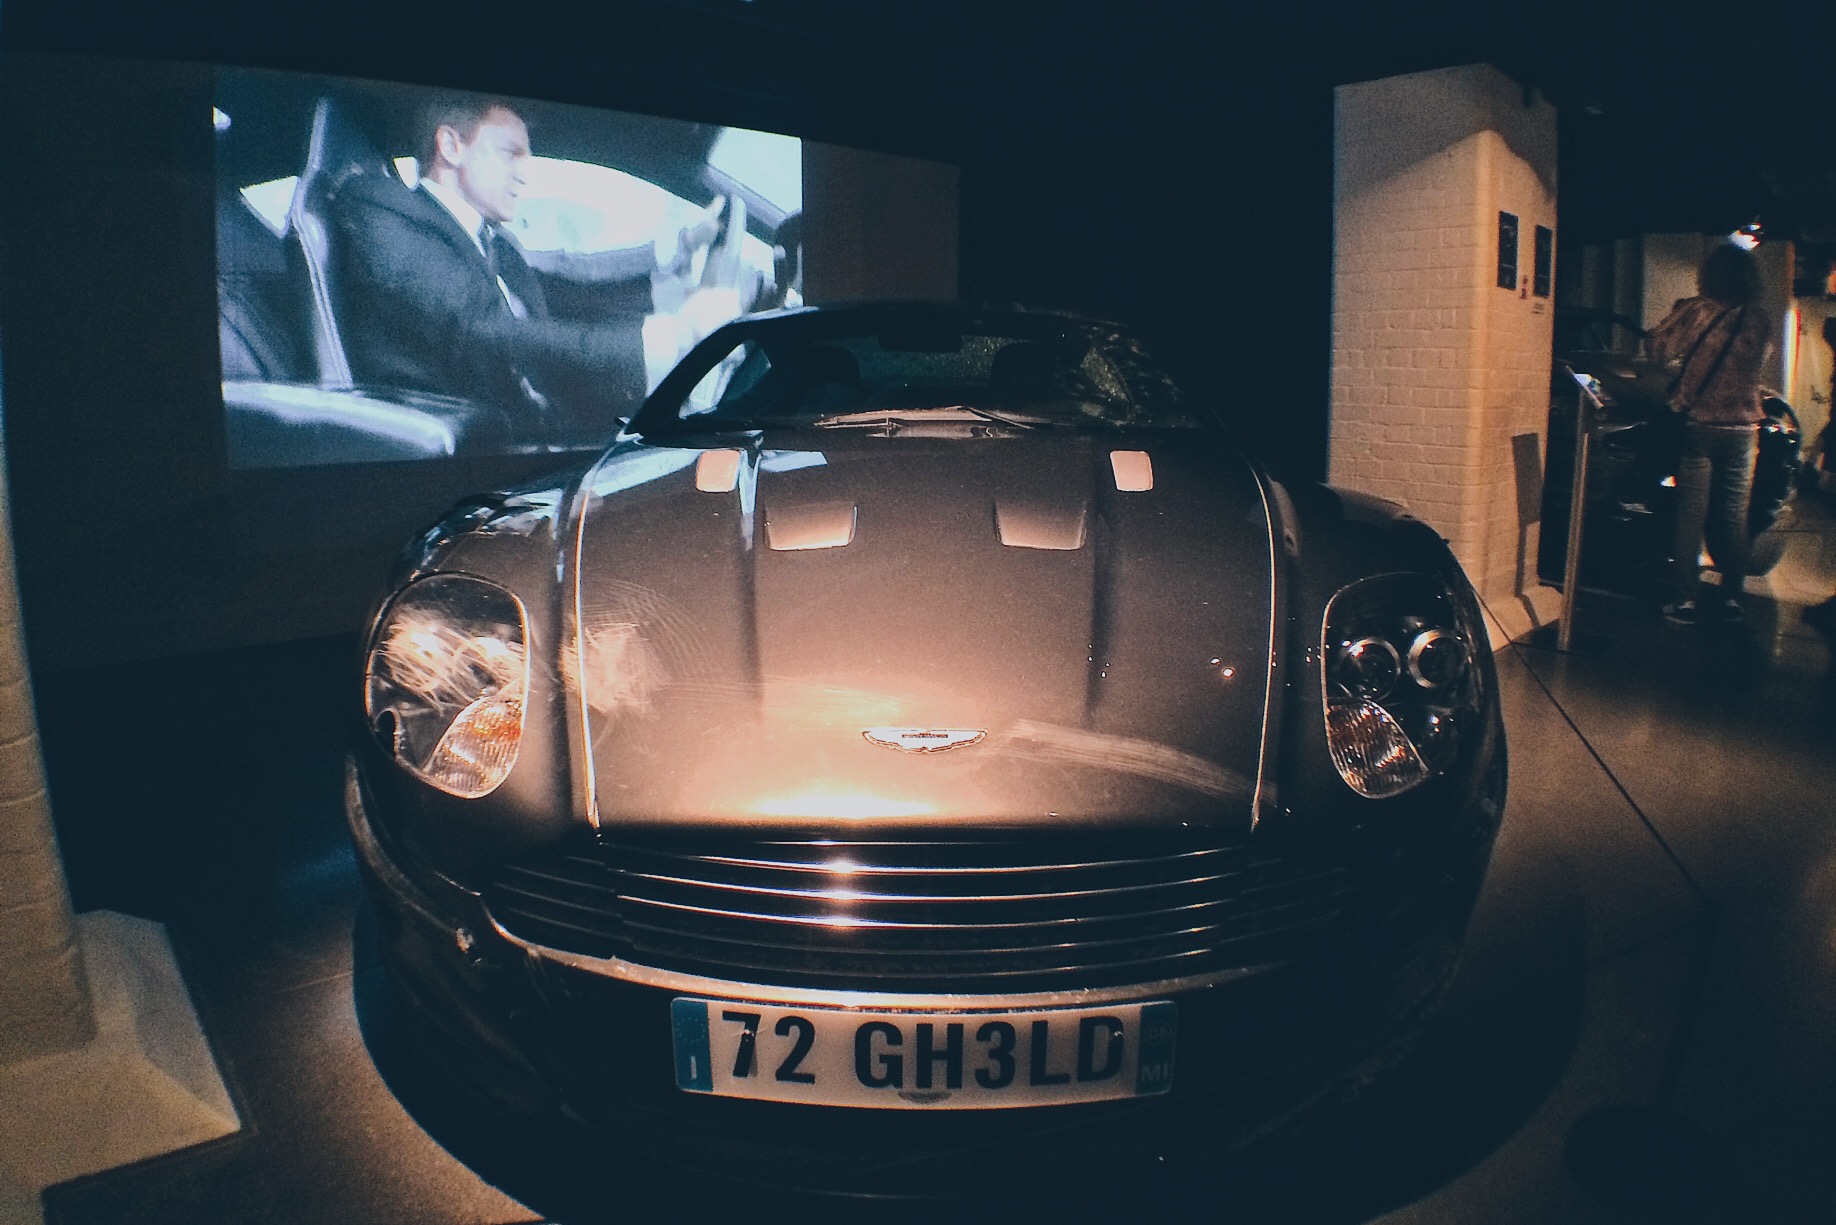 Aston Martin DBS: El auto con el que Daniel Craig debutó en "Casino Royale" (2006) y que regresó para la escena inicial de "Quantum of Solace" (2008), en la cual se usó el auto de la foto. Foto: Marco Gómez